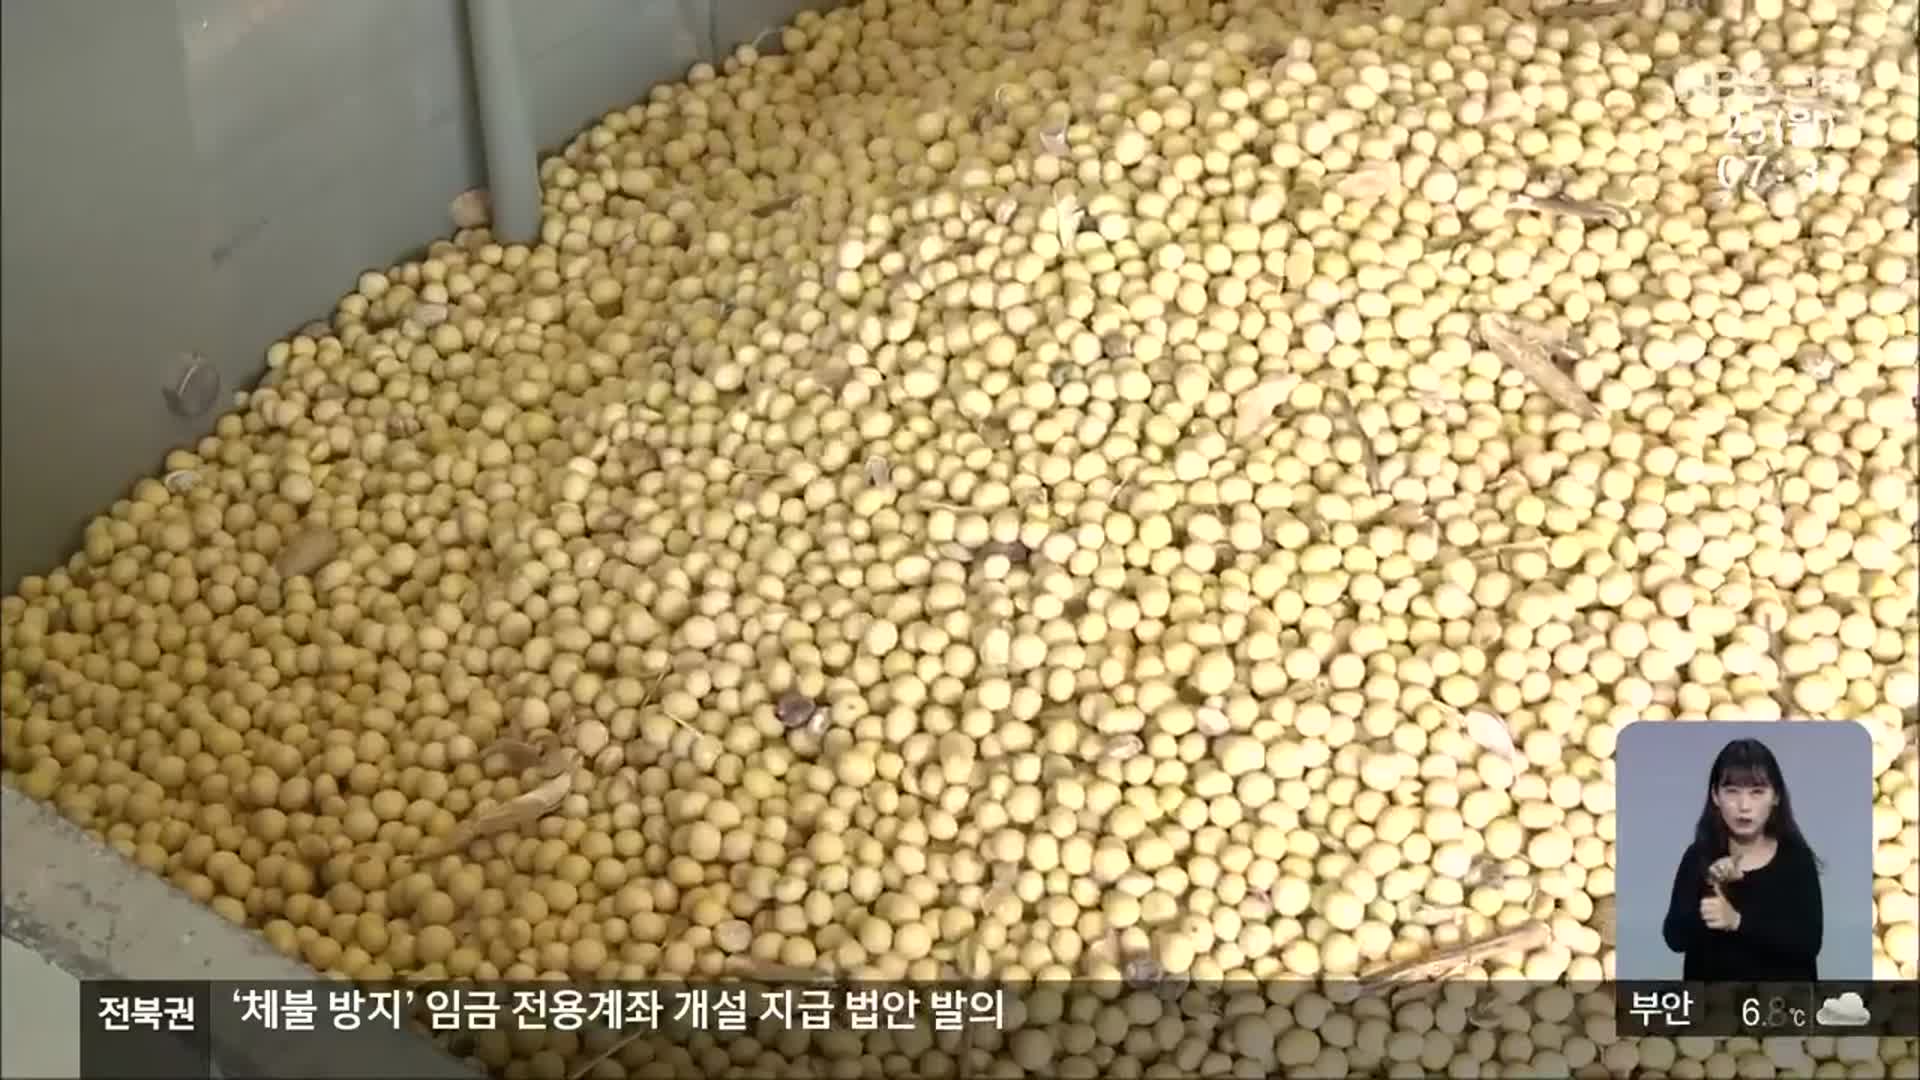 [전북의 창] 콩 선별장 개방…노동력 절감·상품성 향상